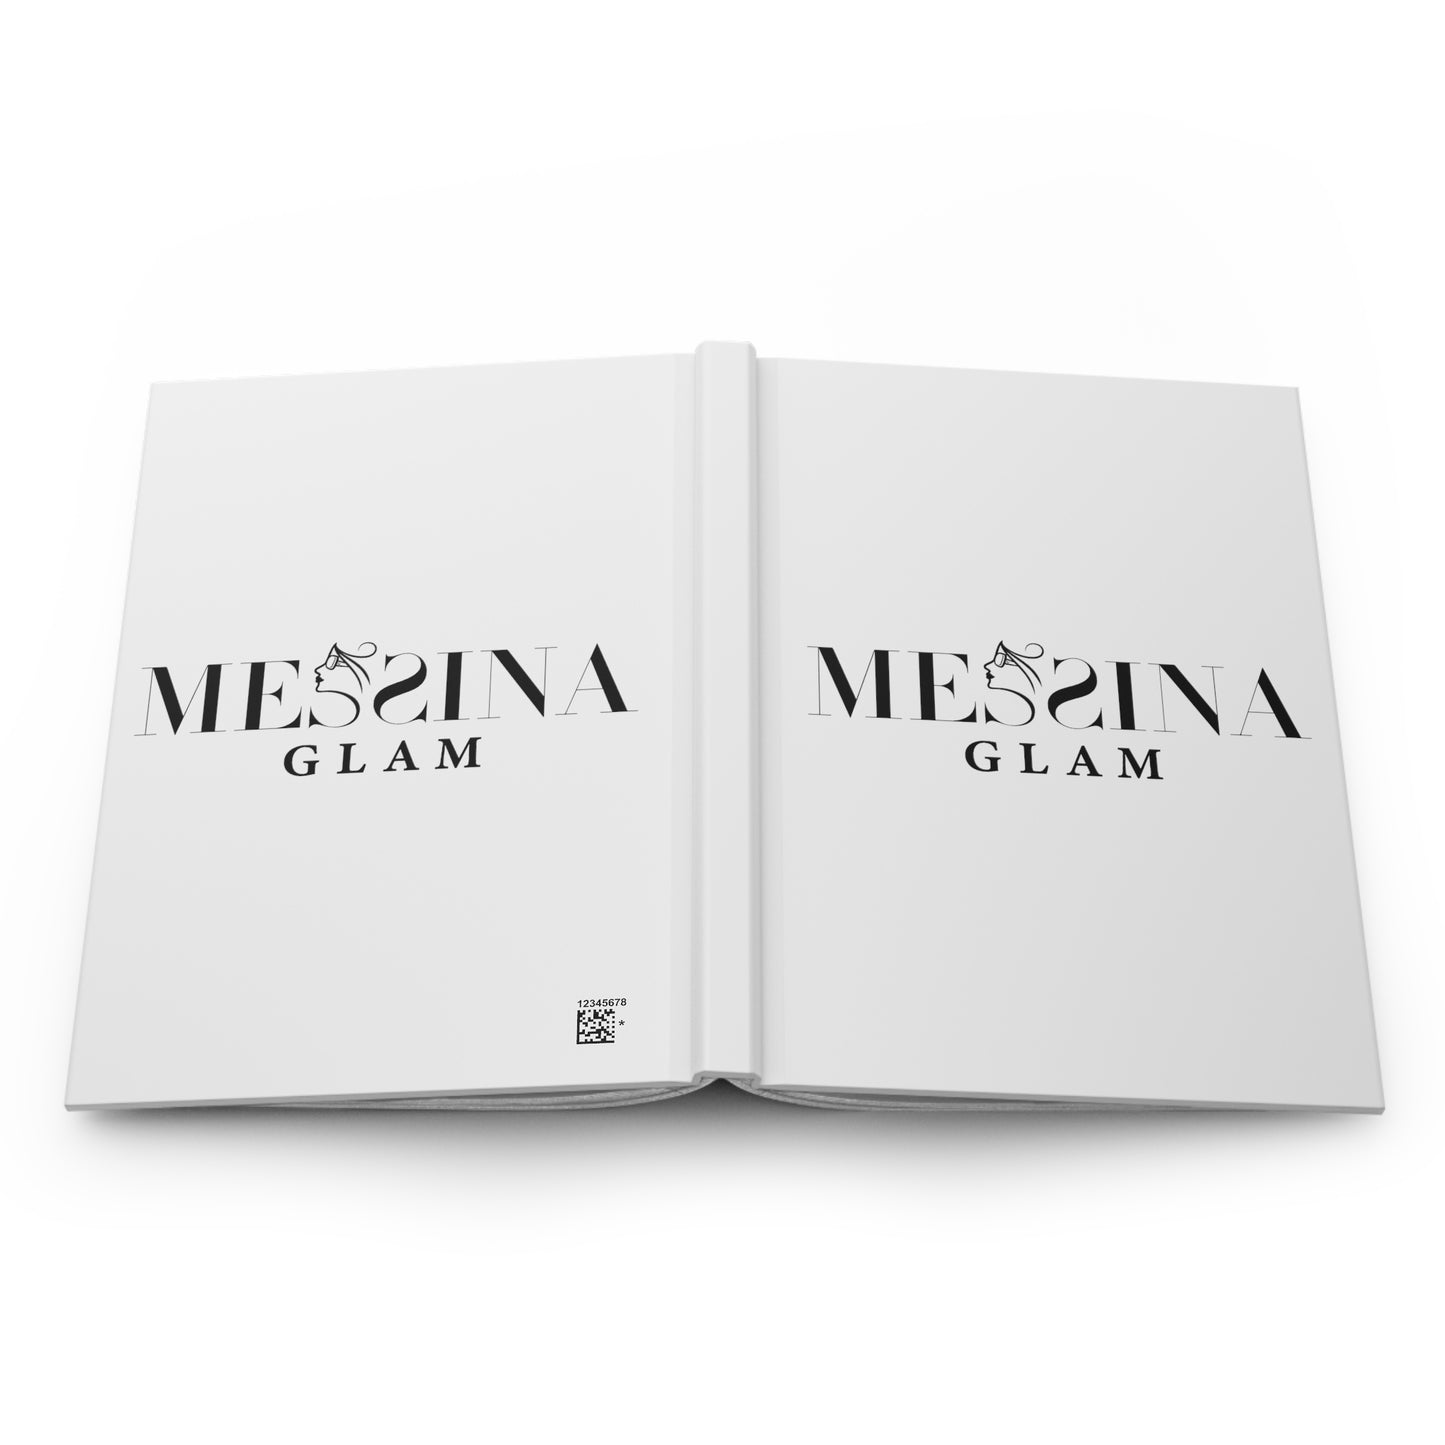 Messina Glam Hardcover Journal Matte